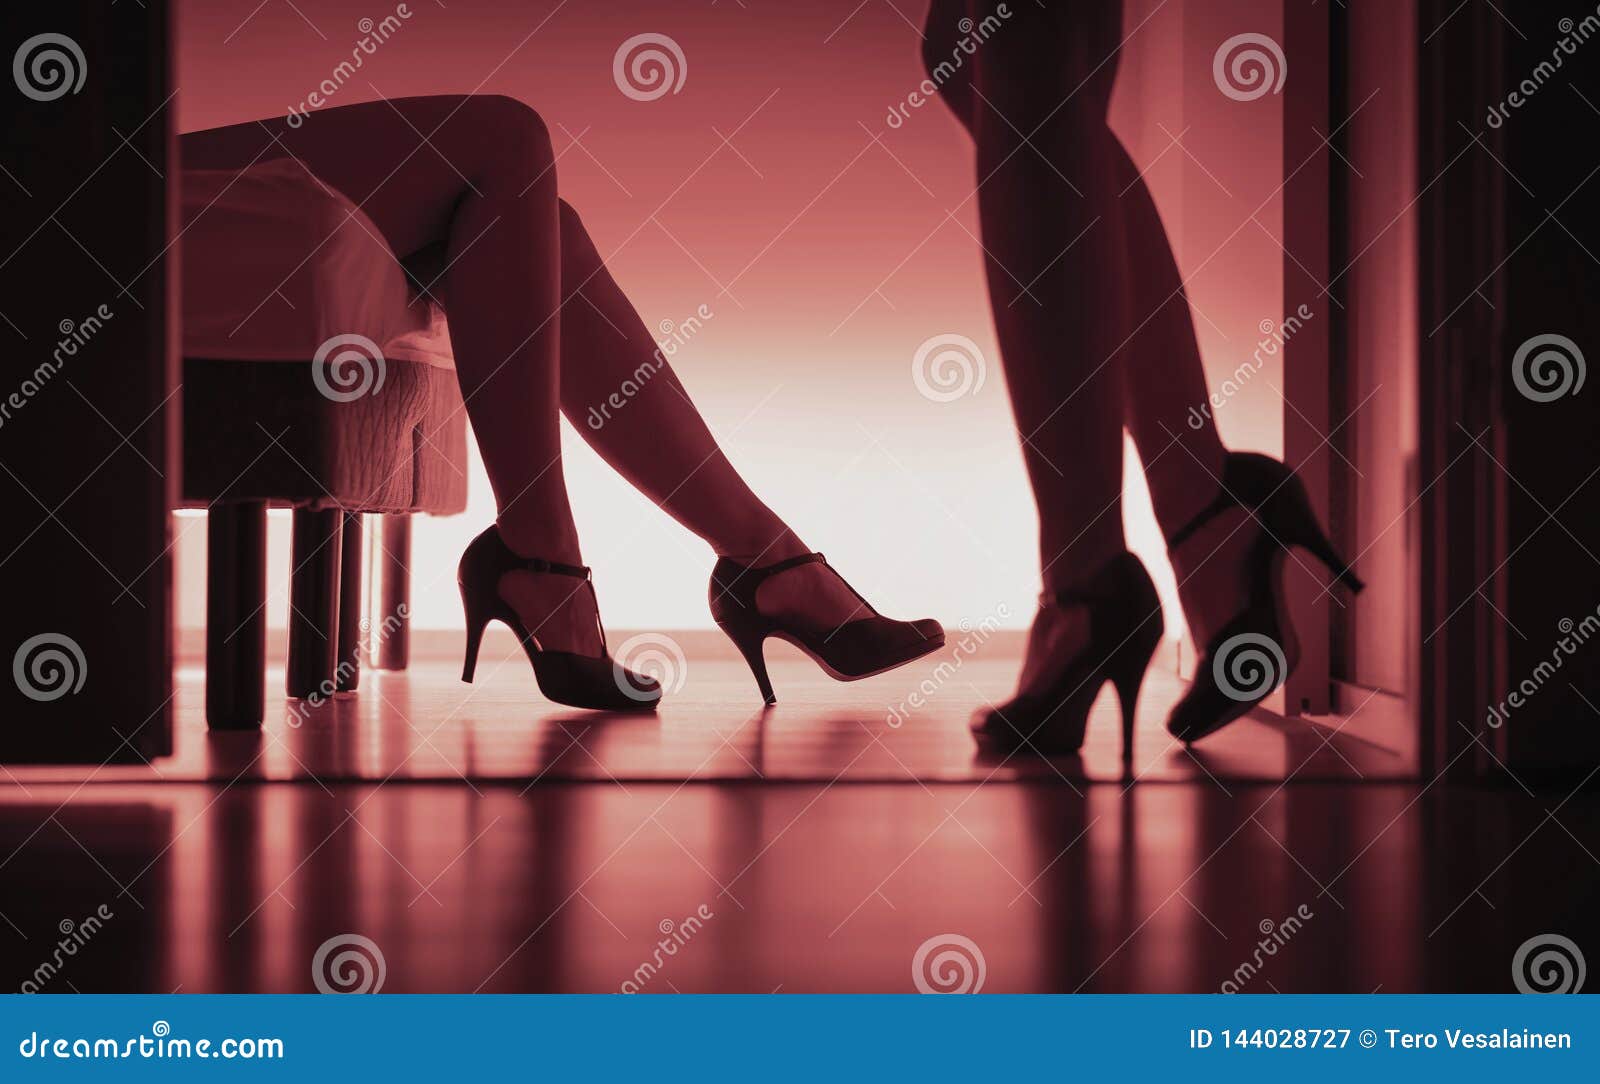 Best of Having sex in heels